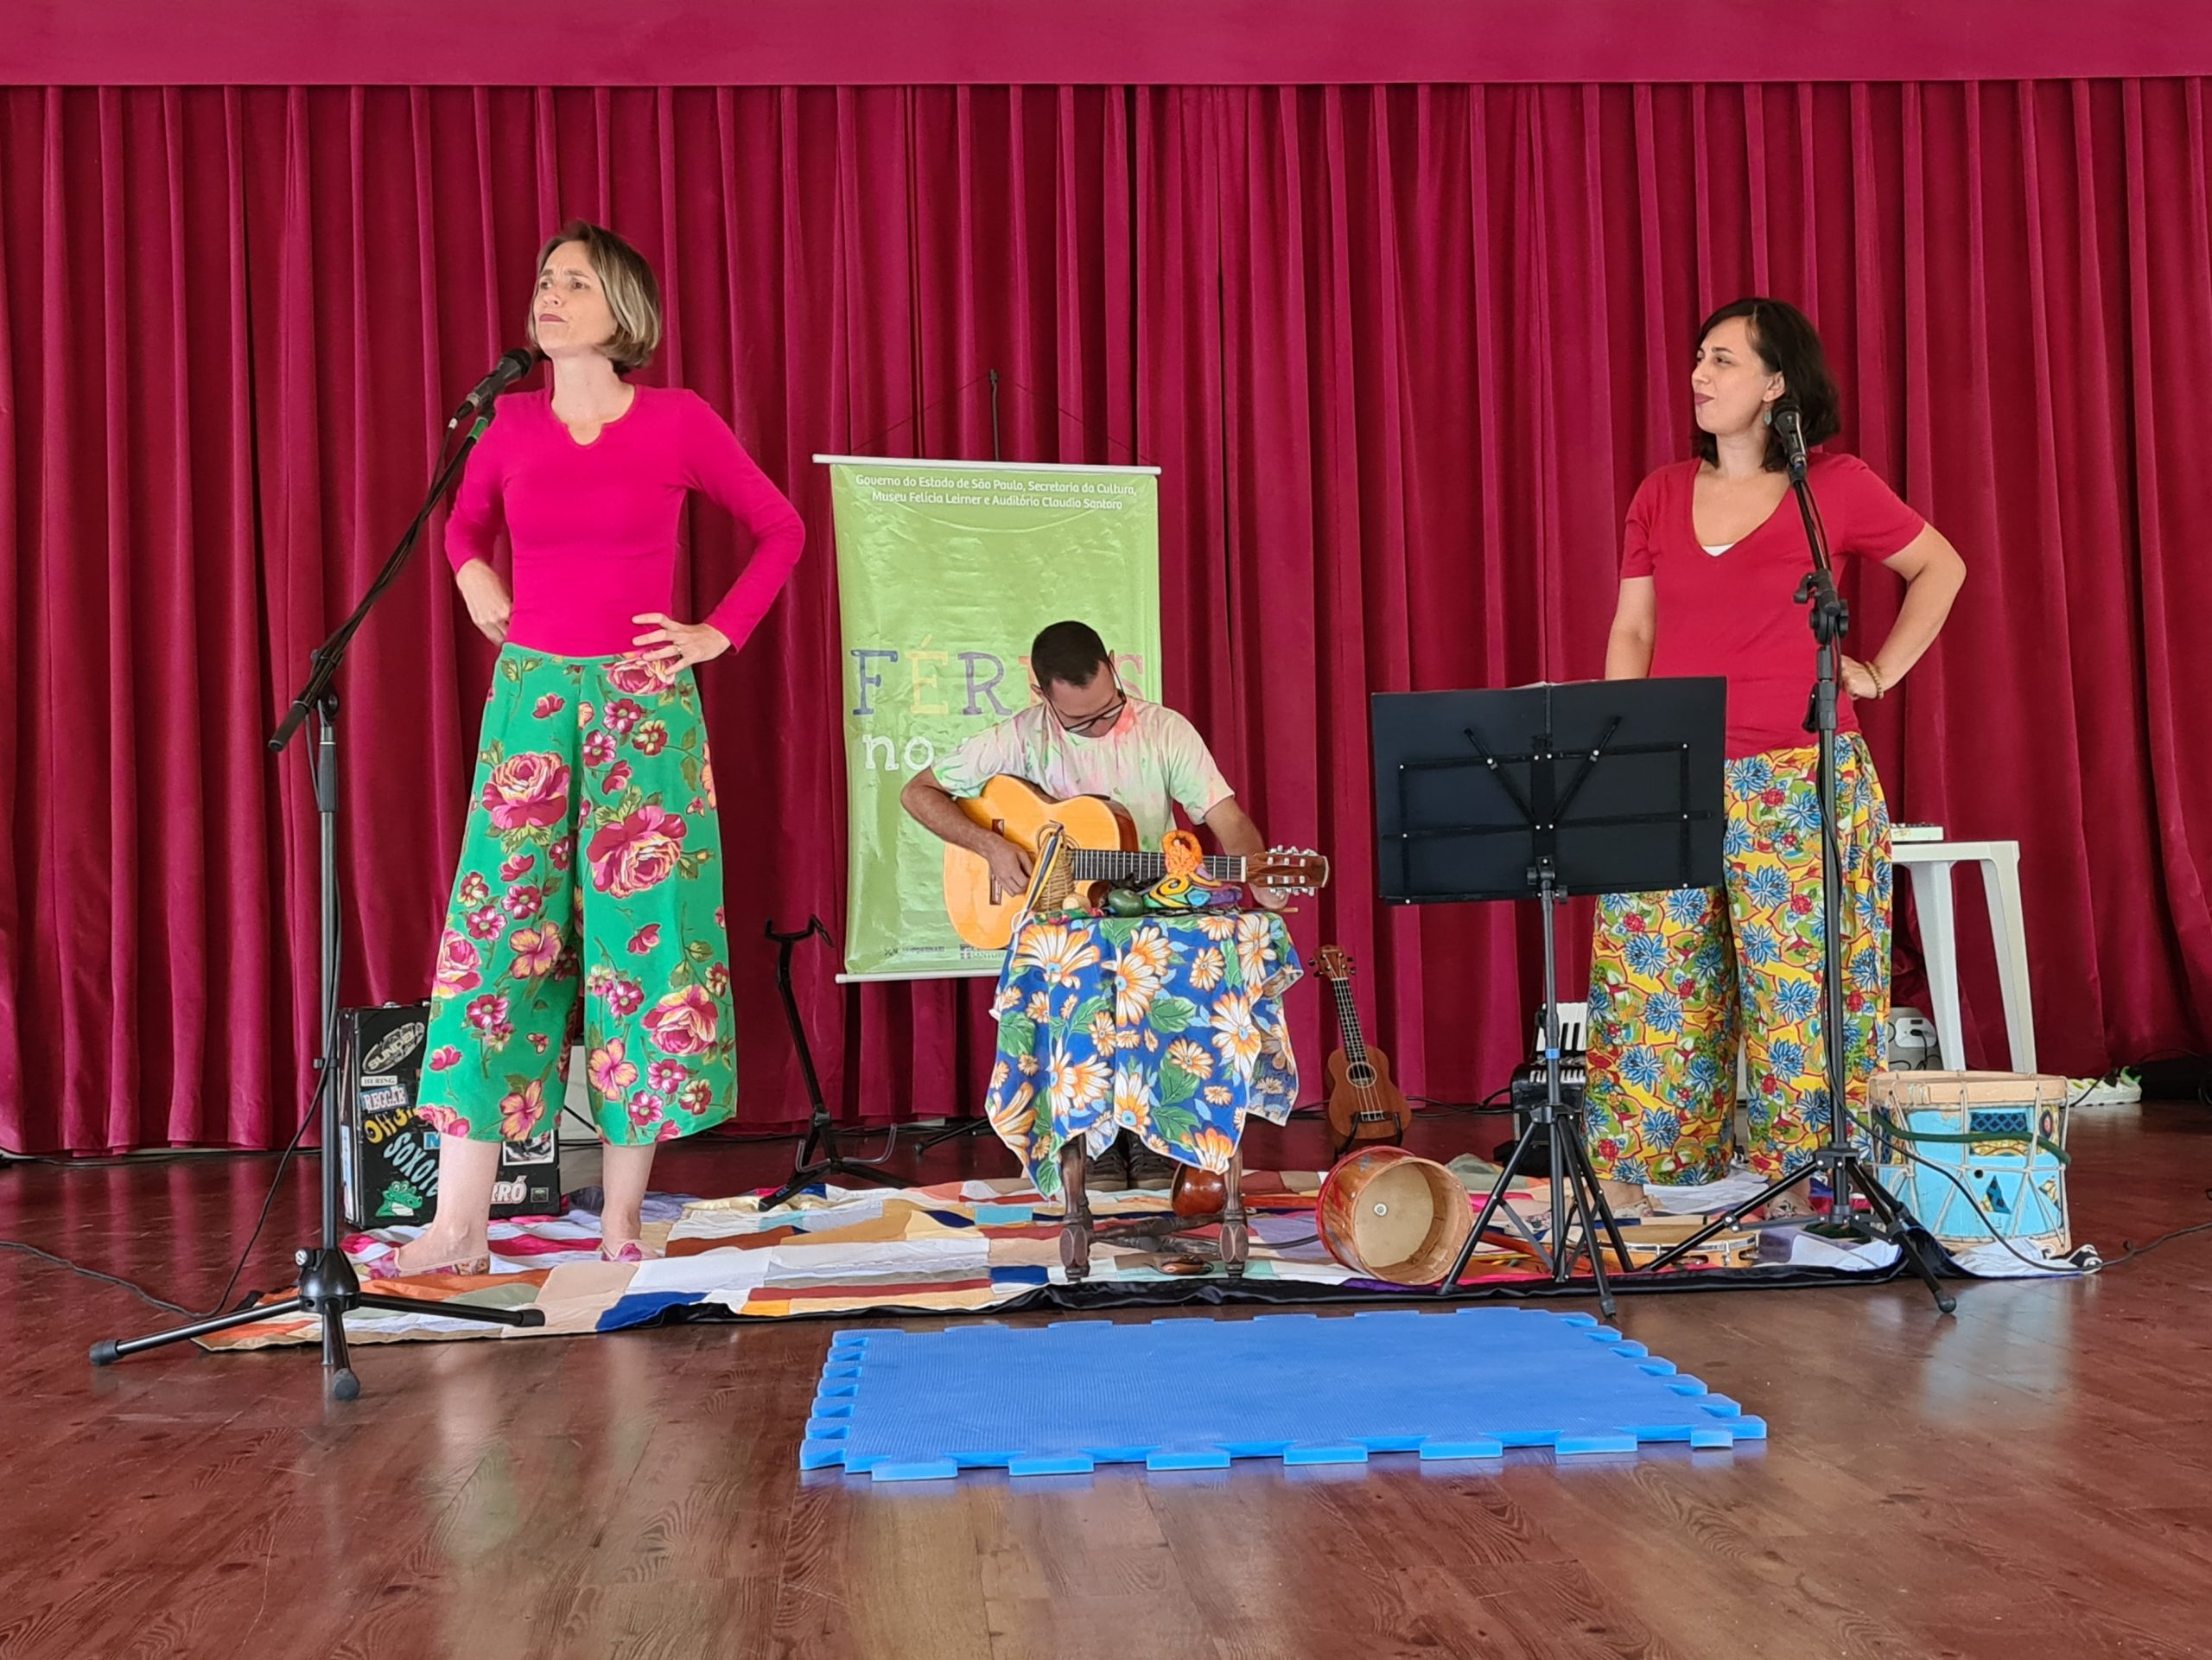 A imagem mostra uma dupla de contadoras de história acompanhada de um violonista. Elas estão usando camiseta rosa e calça florida. Ao redor há alguns elementos musicais como: acordeon, ukulele e tambores.